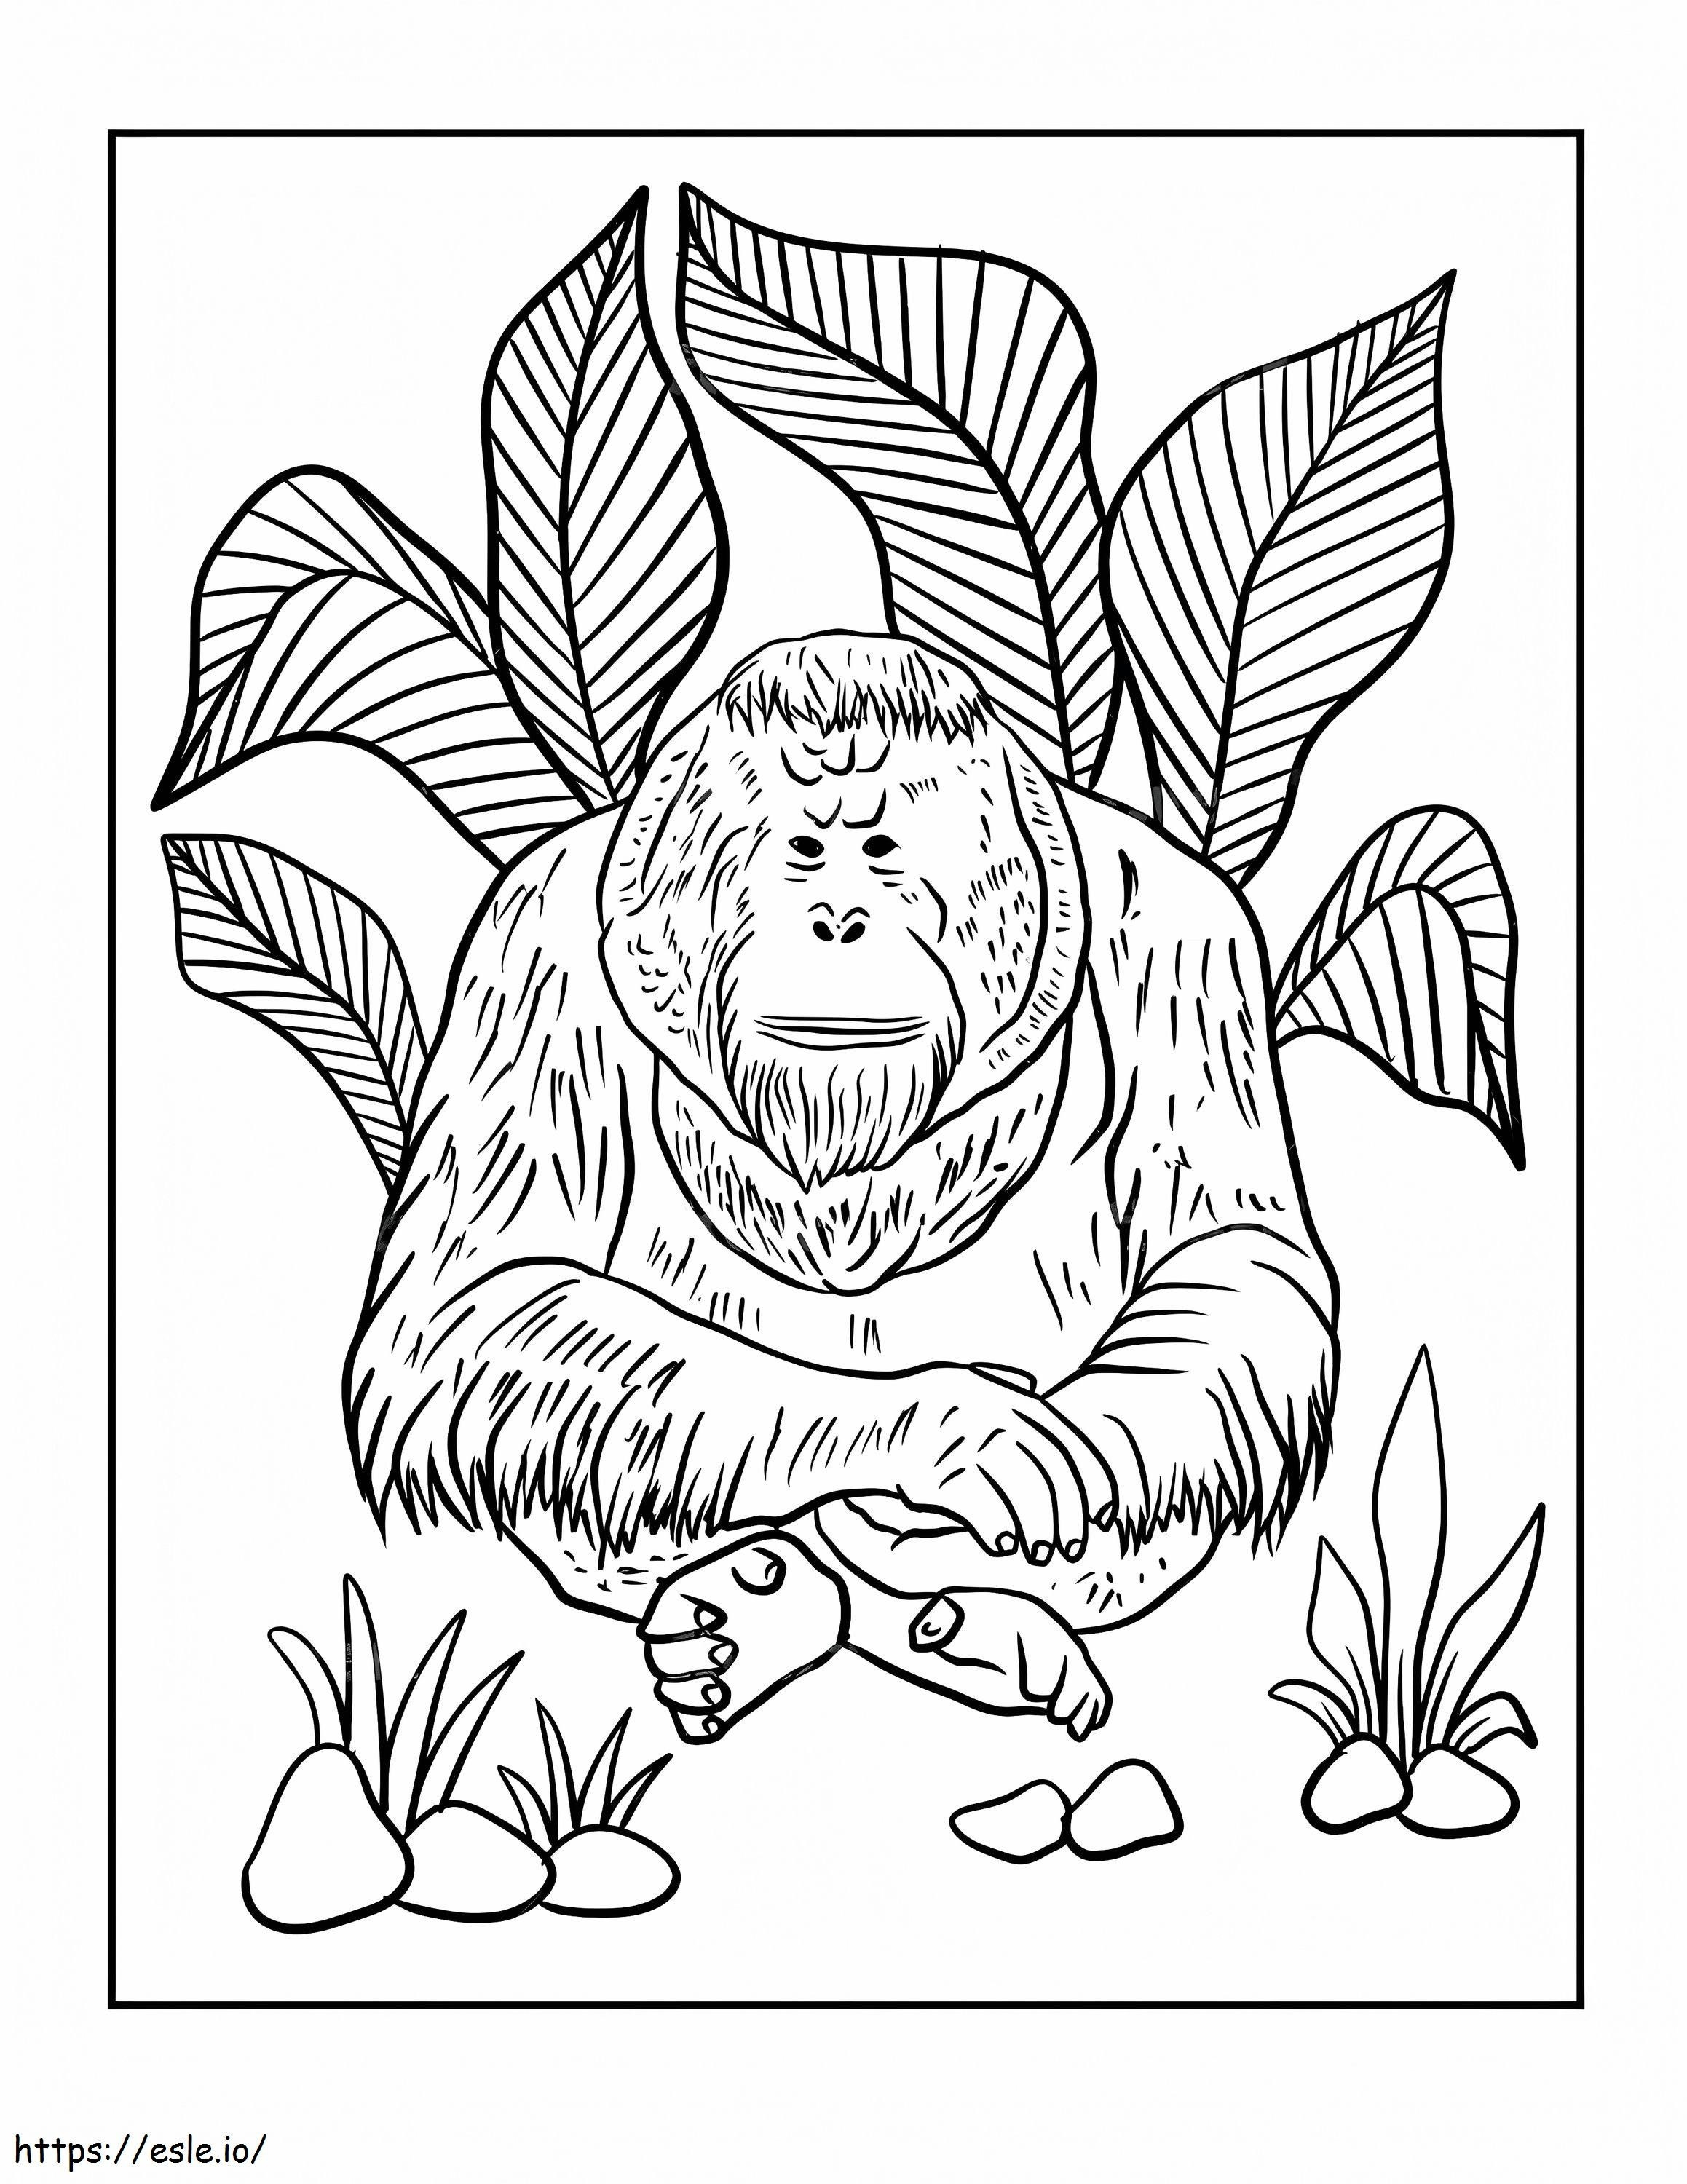 Bornean Orangutan coloring page